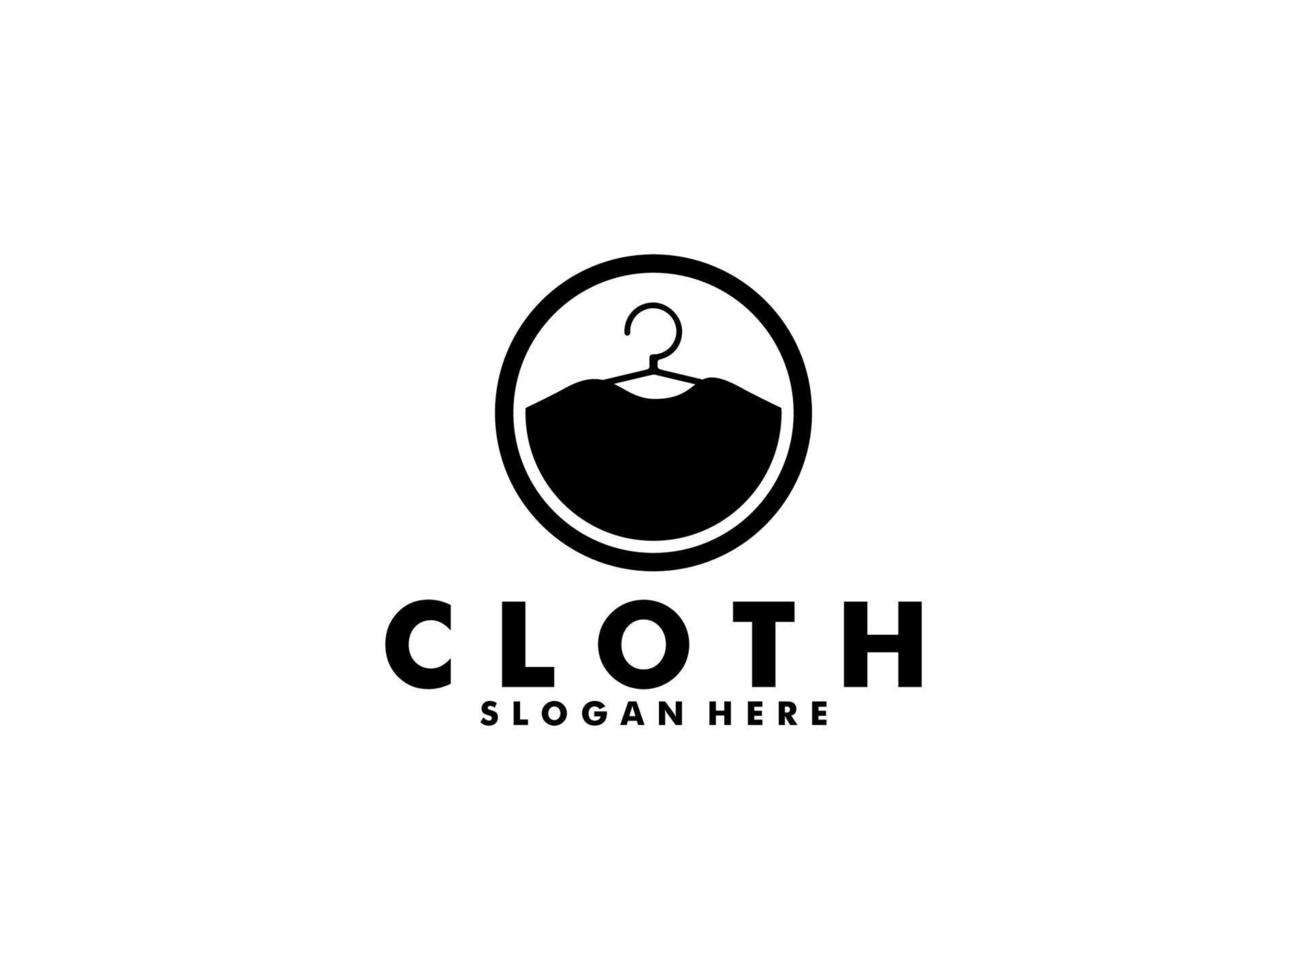 roupas loja logotipo Projeto inspiração. pano fazer compras logotipo, roupas logotipo vetor ilustração